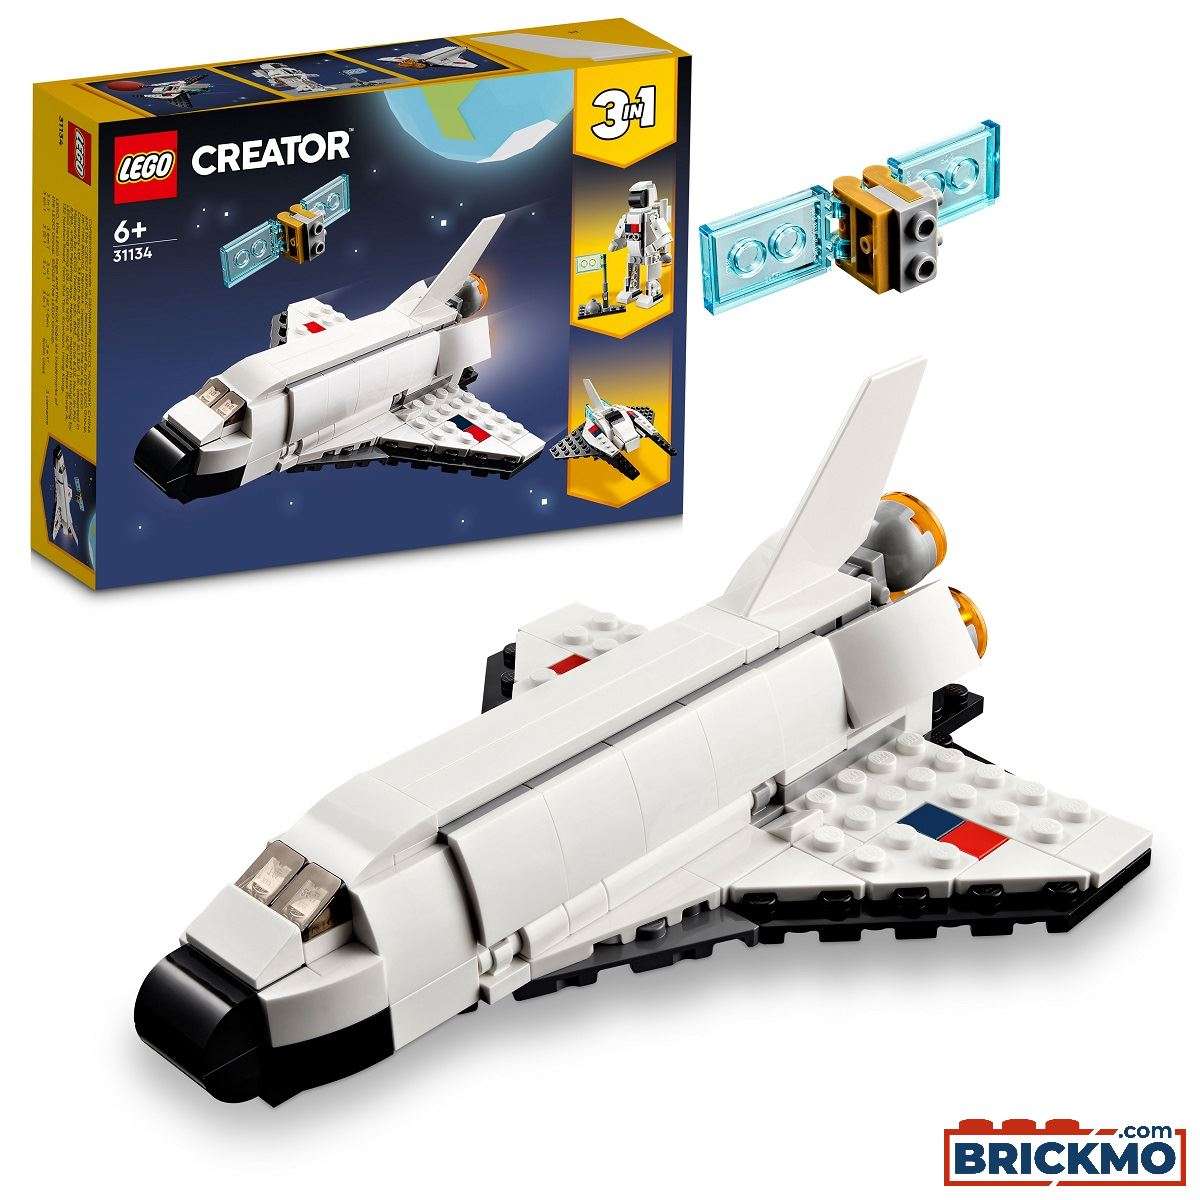 Glat mistænksom Det er det heldige LEGO Creator 31134 Rumfærge 31134 | TRUCKMO.com Lkw-Modelle